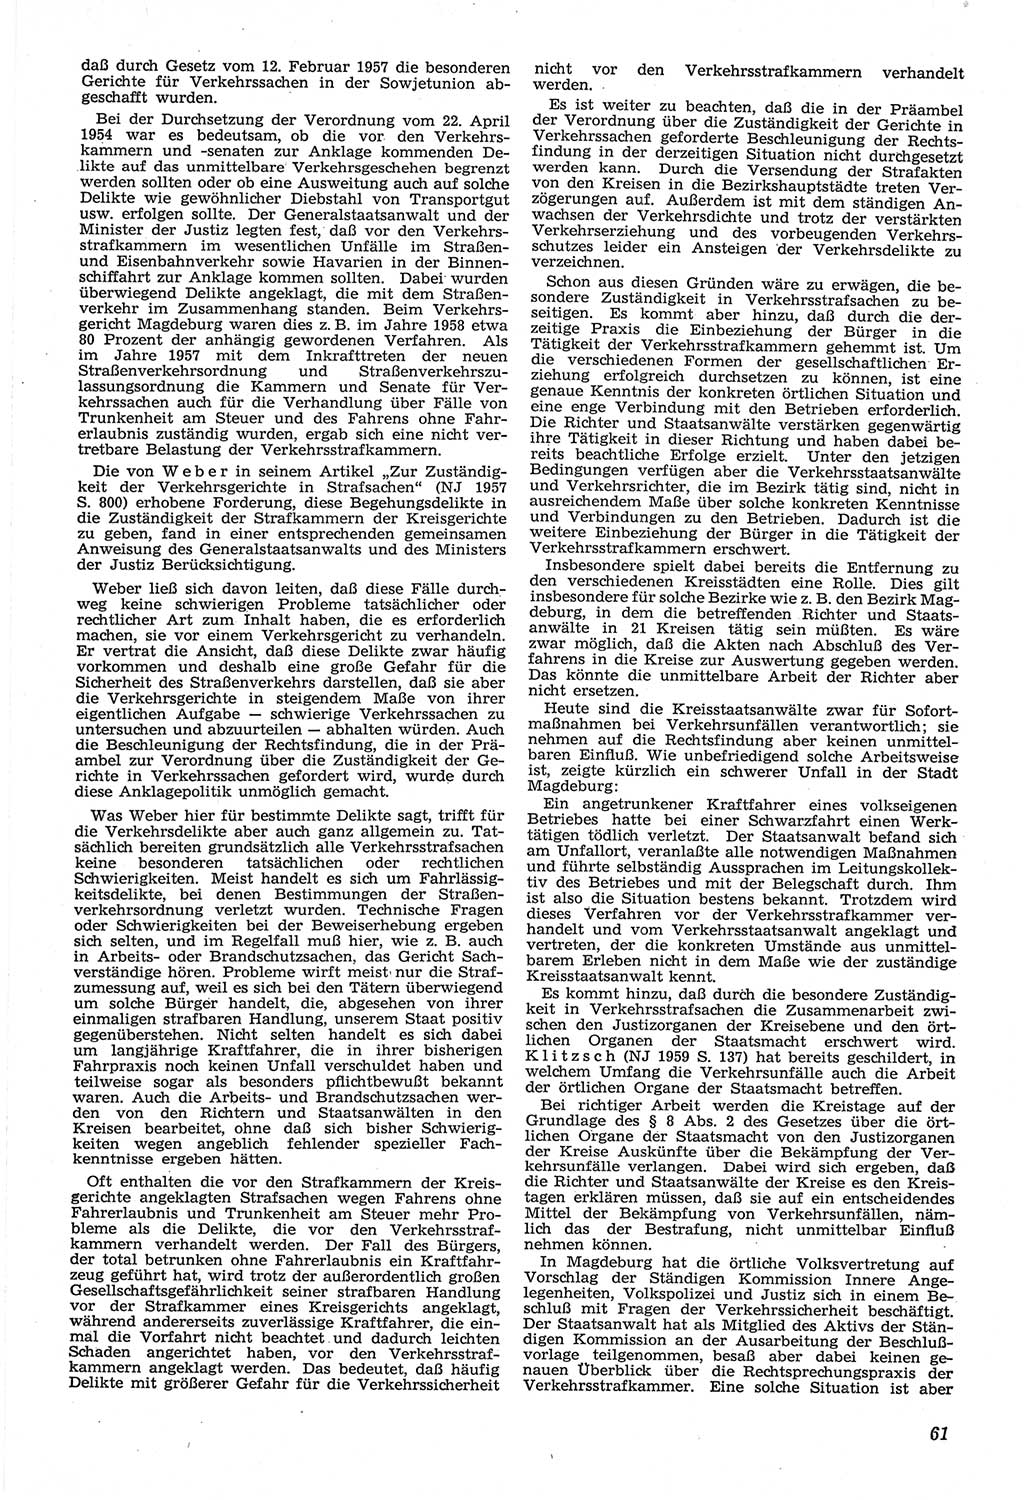 Neue Justiz (NJ), Zeitschrift für Recht und Rechtswissenschaft [Deutsche Demokratische Republik (DDR)], 14. Jahrgang 1960, Seite 61 (NJ DDR 1960, S. 61)